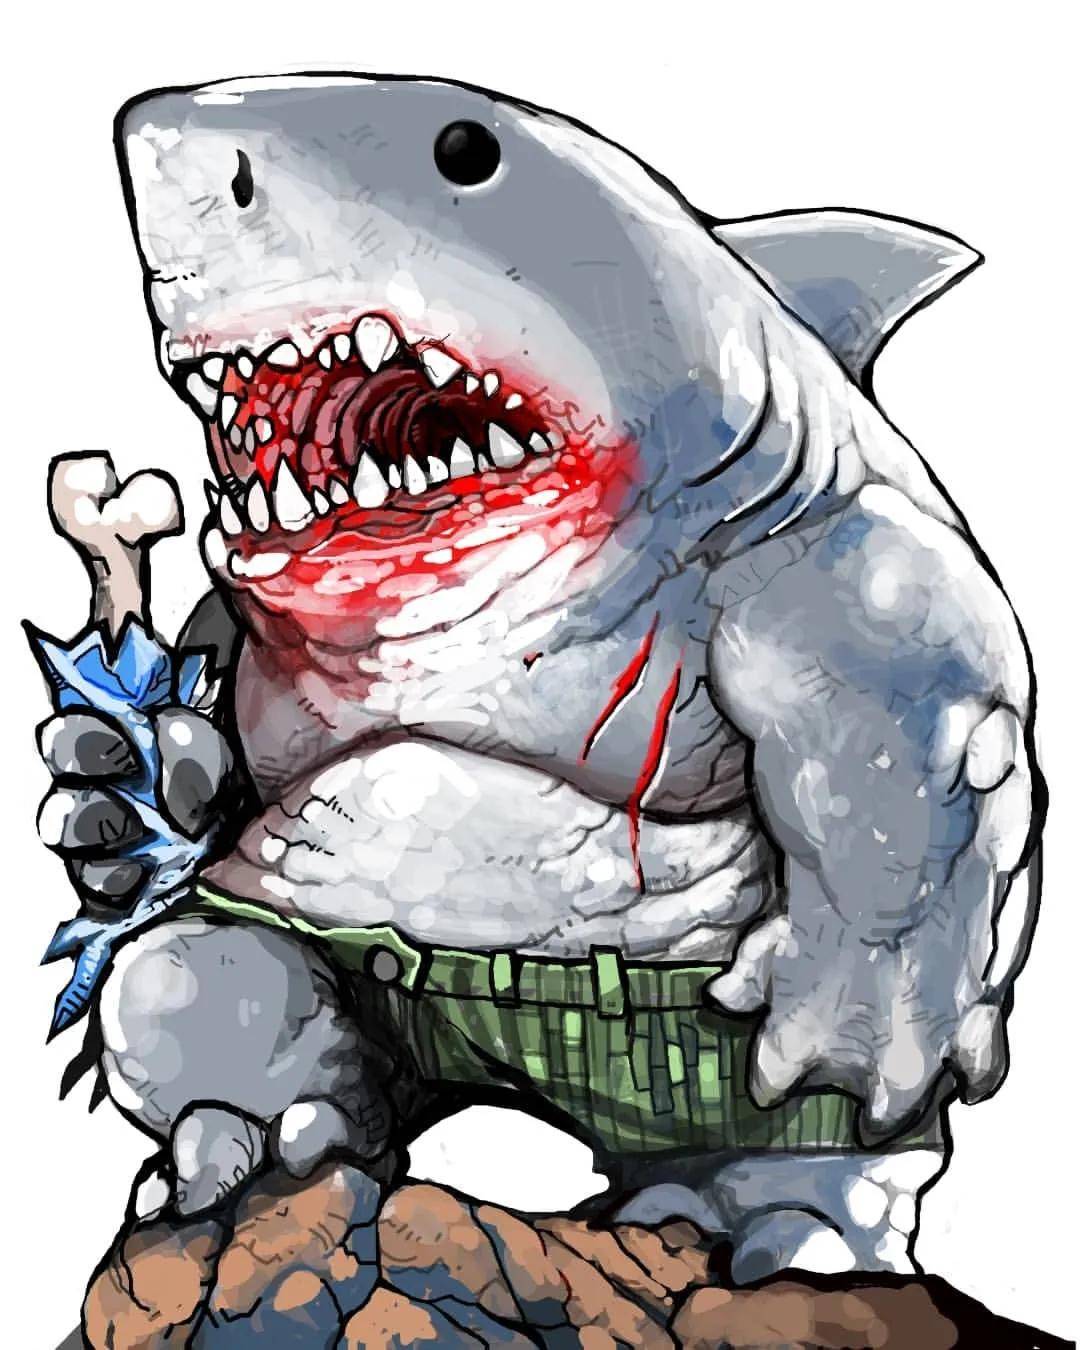 要为x特遣队加添一个吉祥物般的队员,所以将鲨鱼王塑造成人形大白鲨